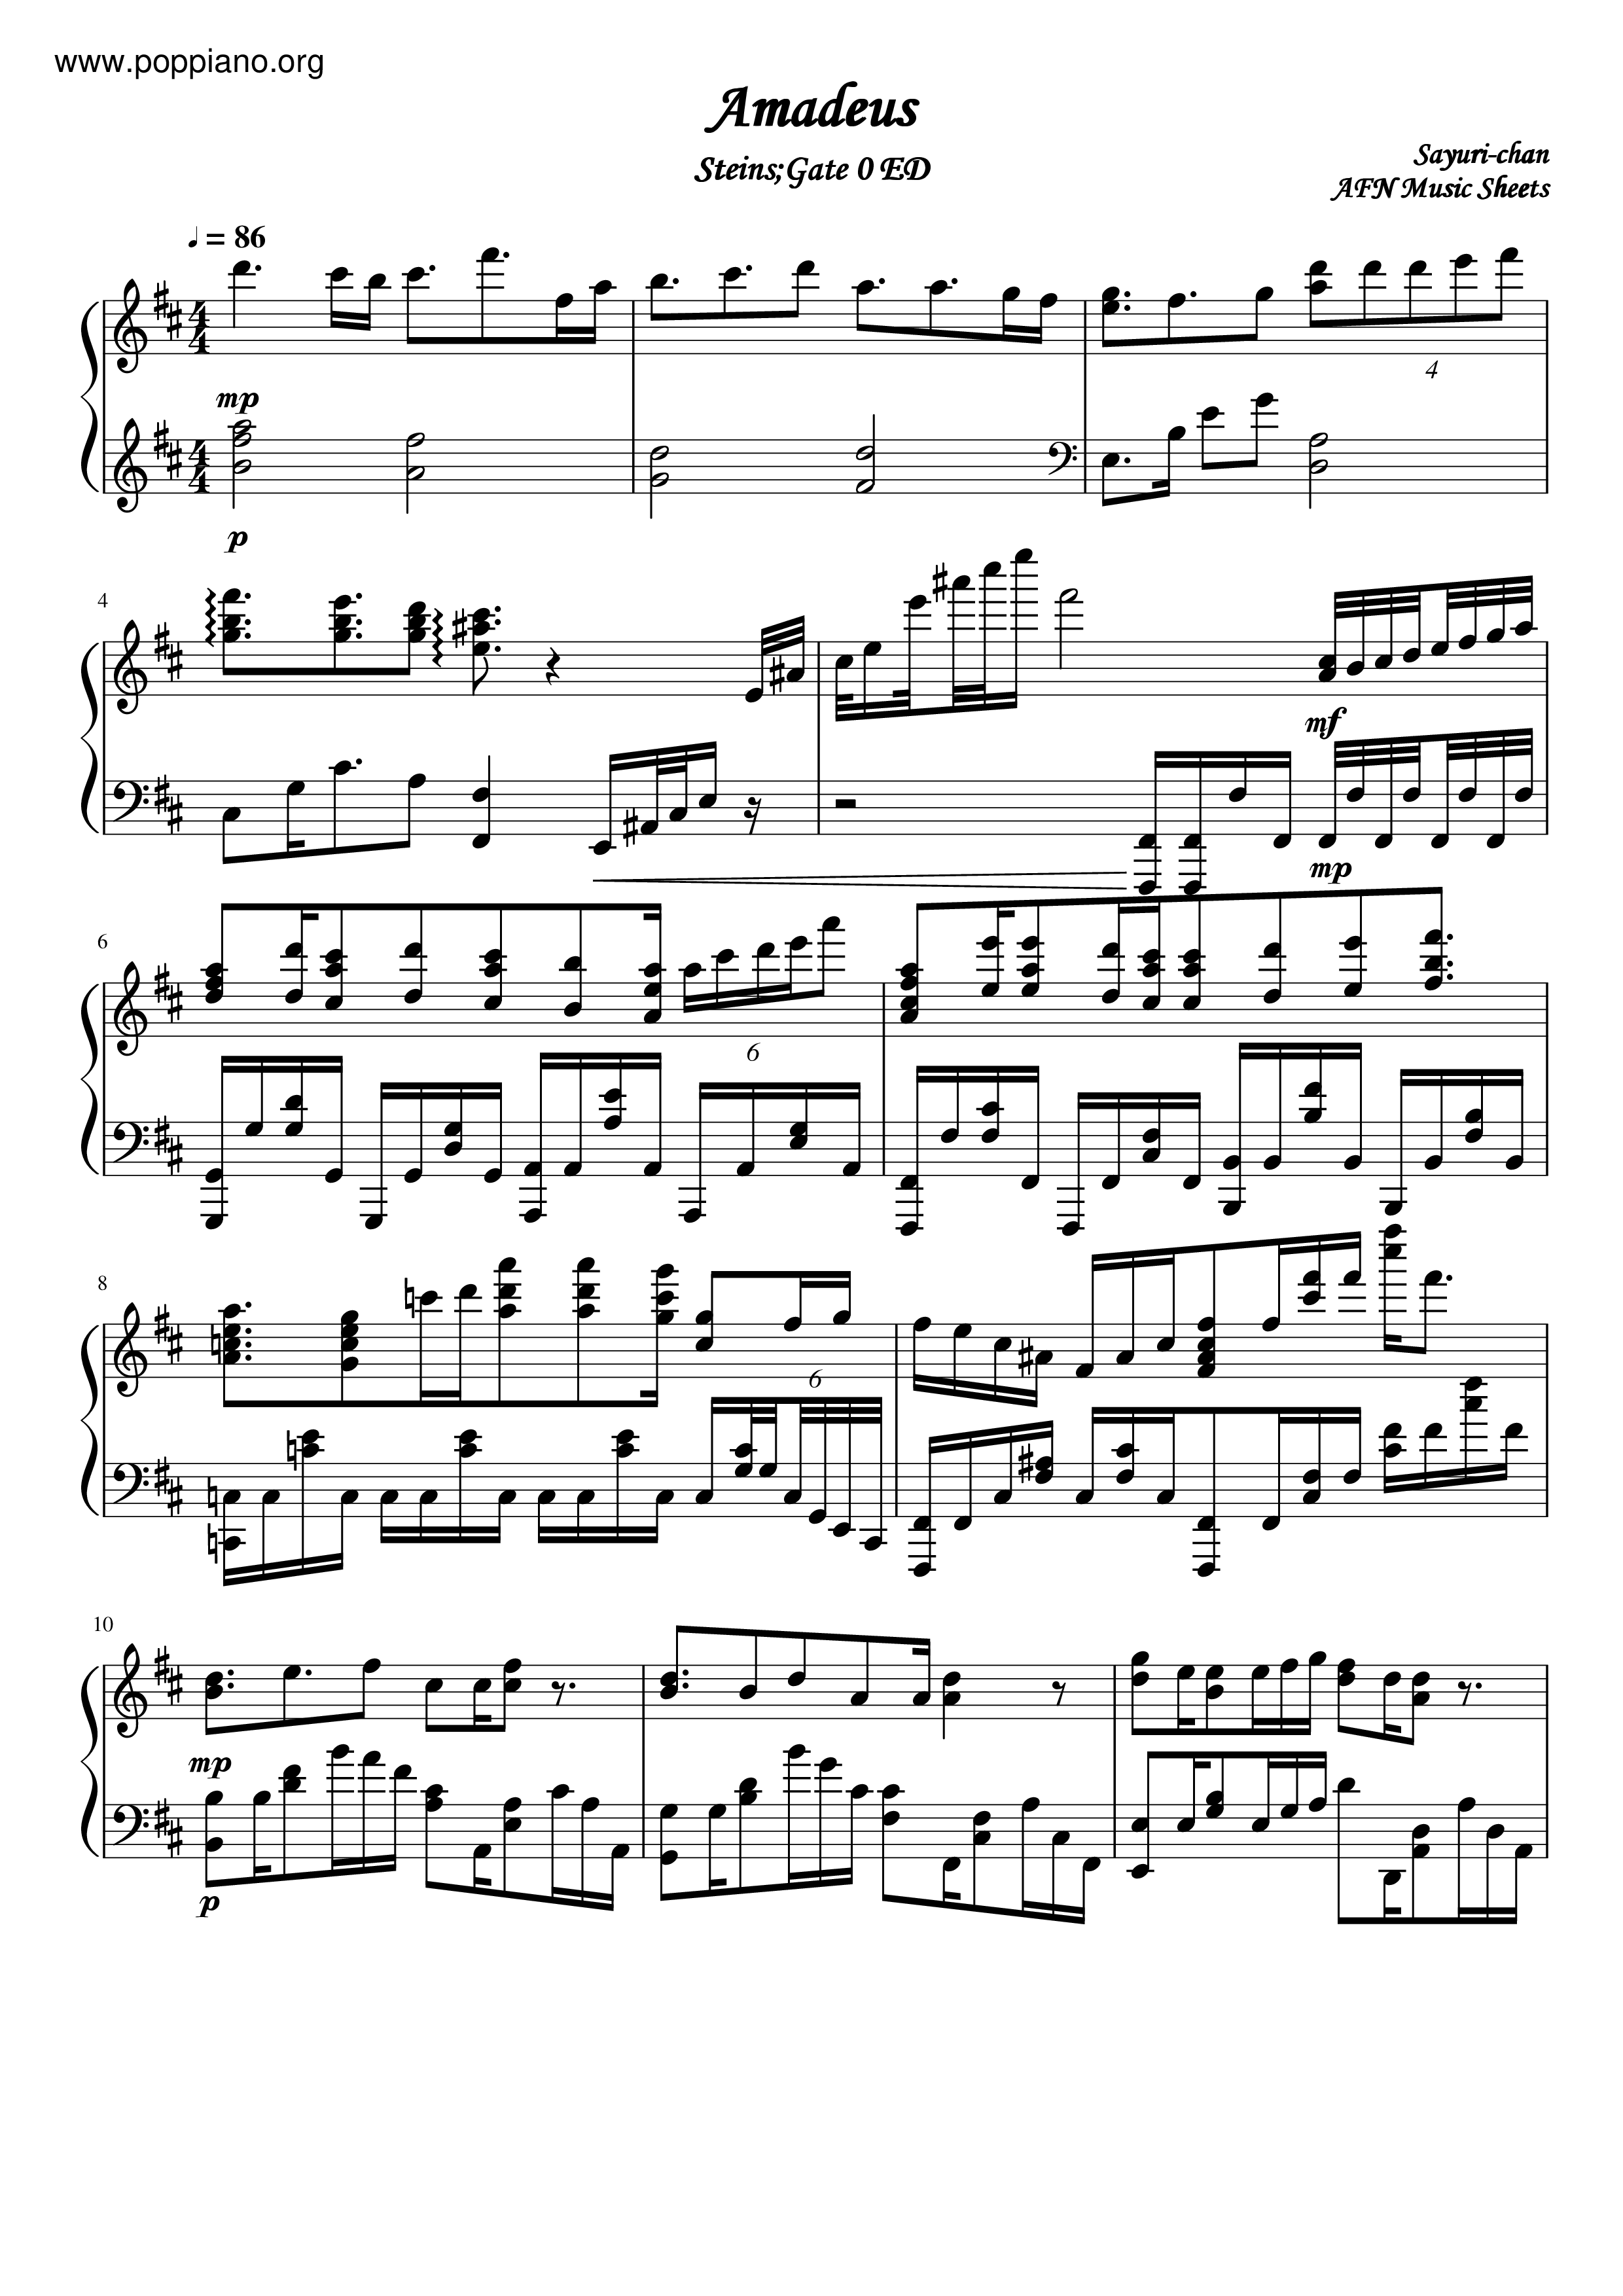 Steins;Gate - Amadeusピアノ譜